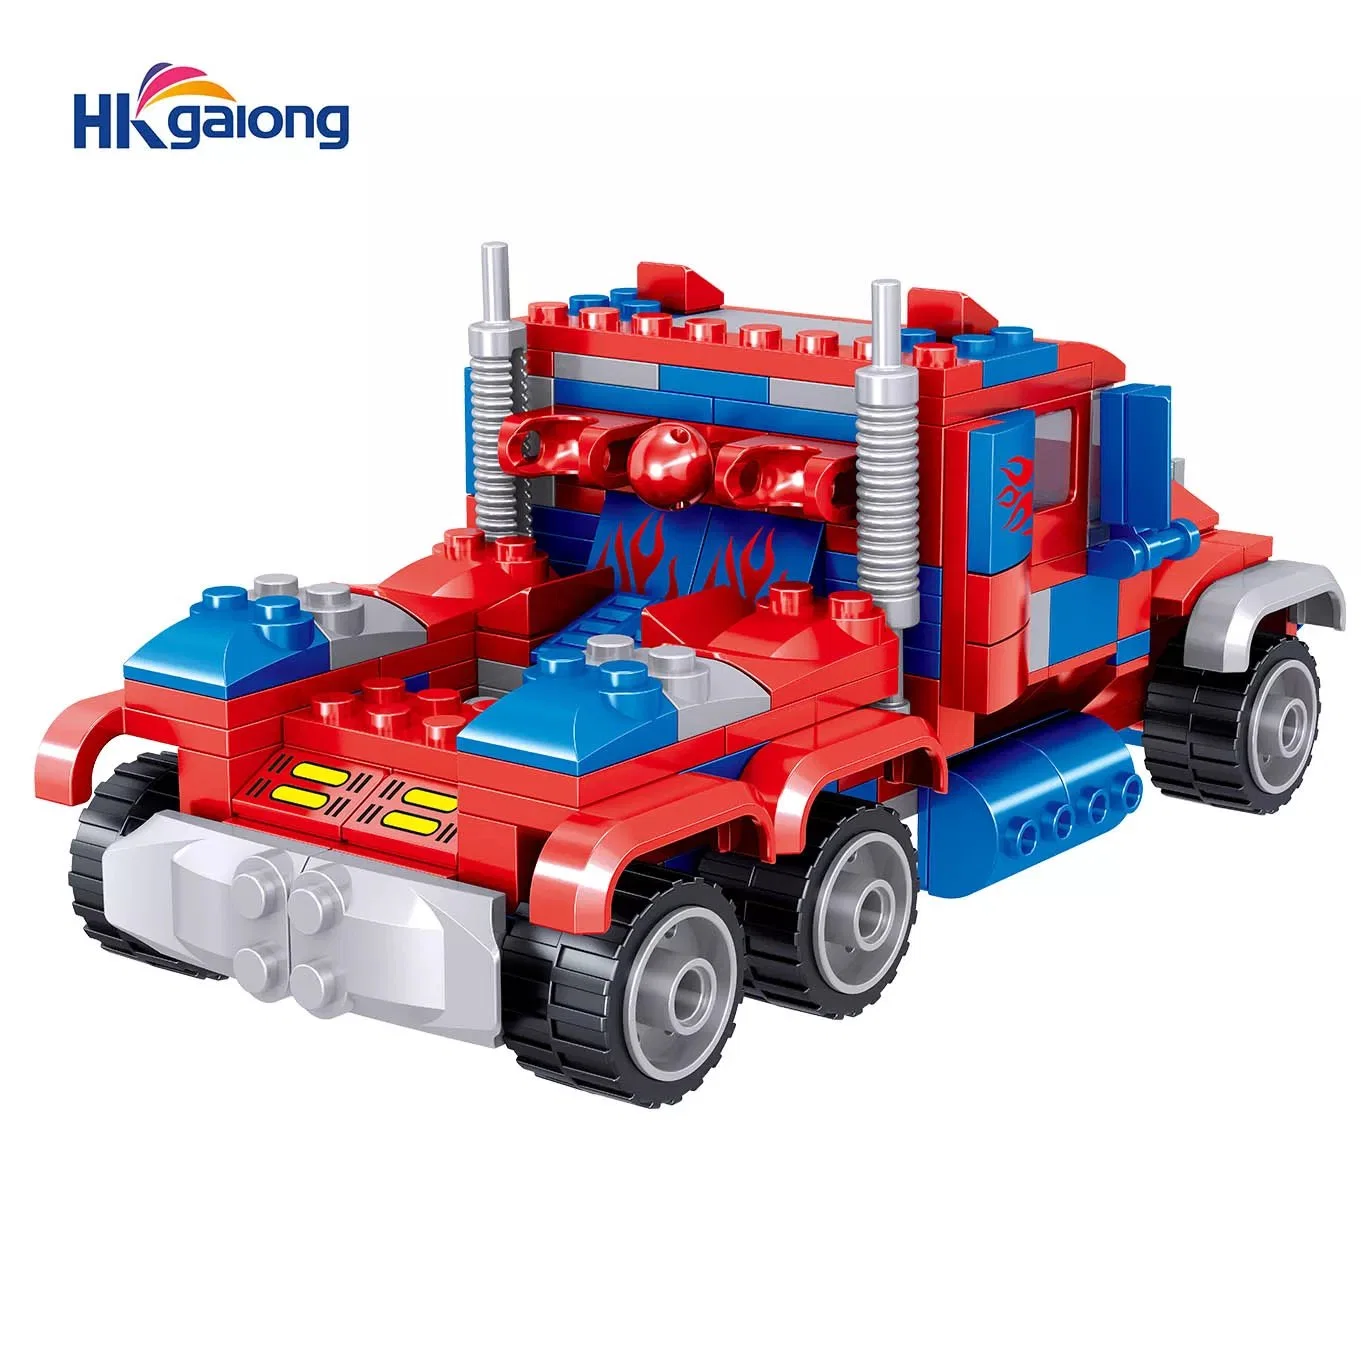 Os brinquedos do robô crianças inteligente do bloco de construção para crianças 545HP